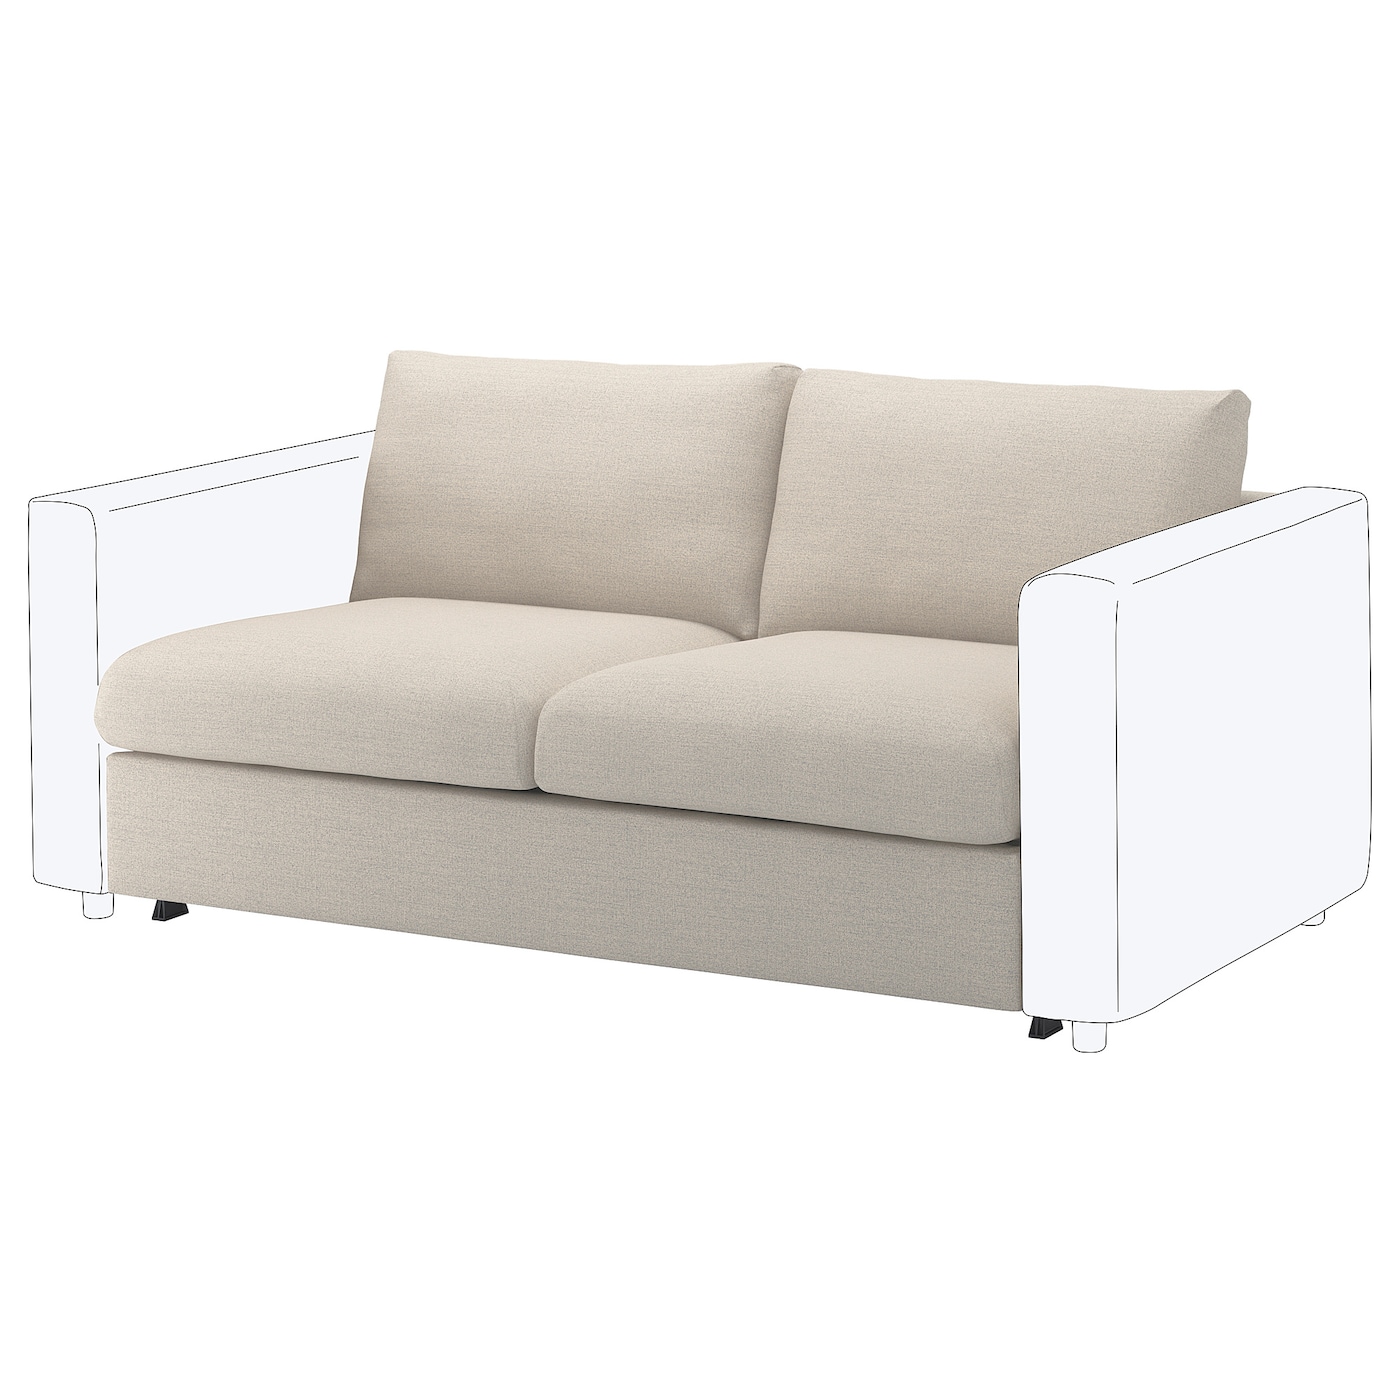 ВИМЛЕ 2-местный диван-кровать, Гуннаред бежевый VIMLE IKEA